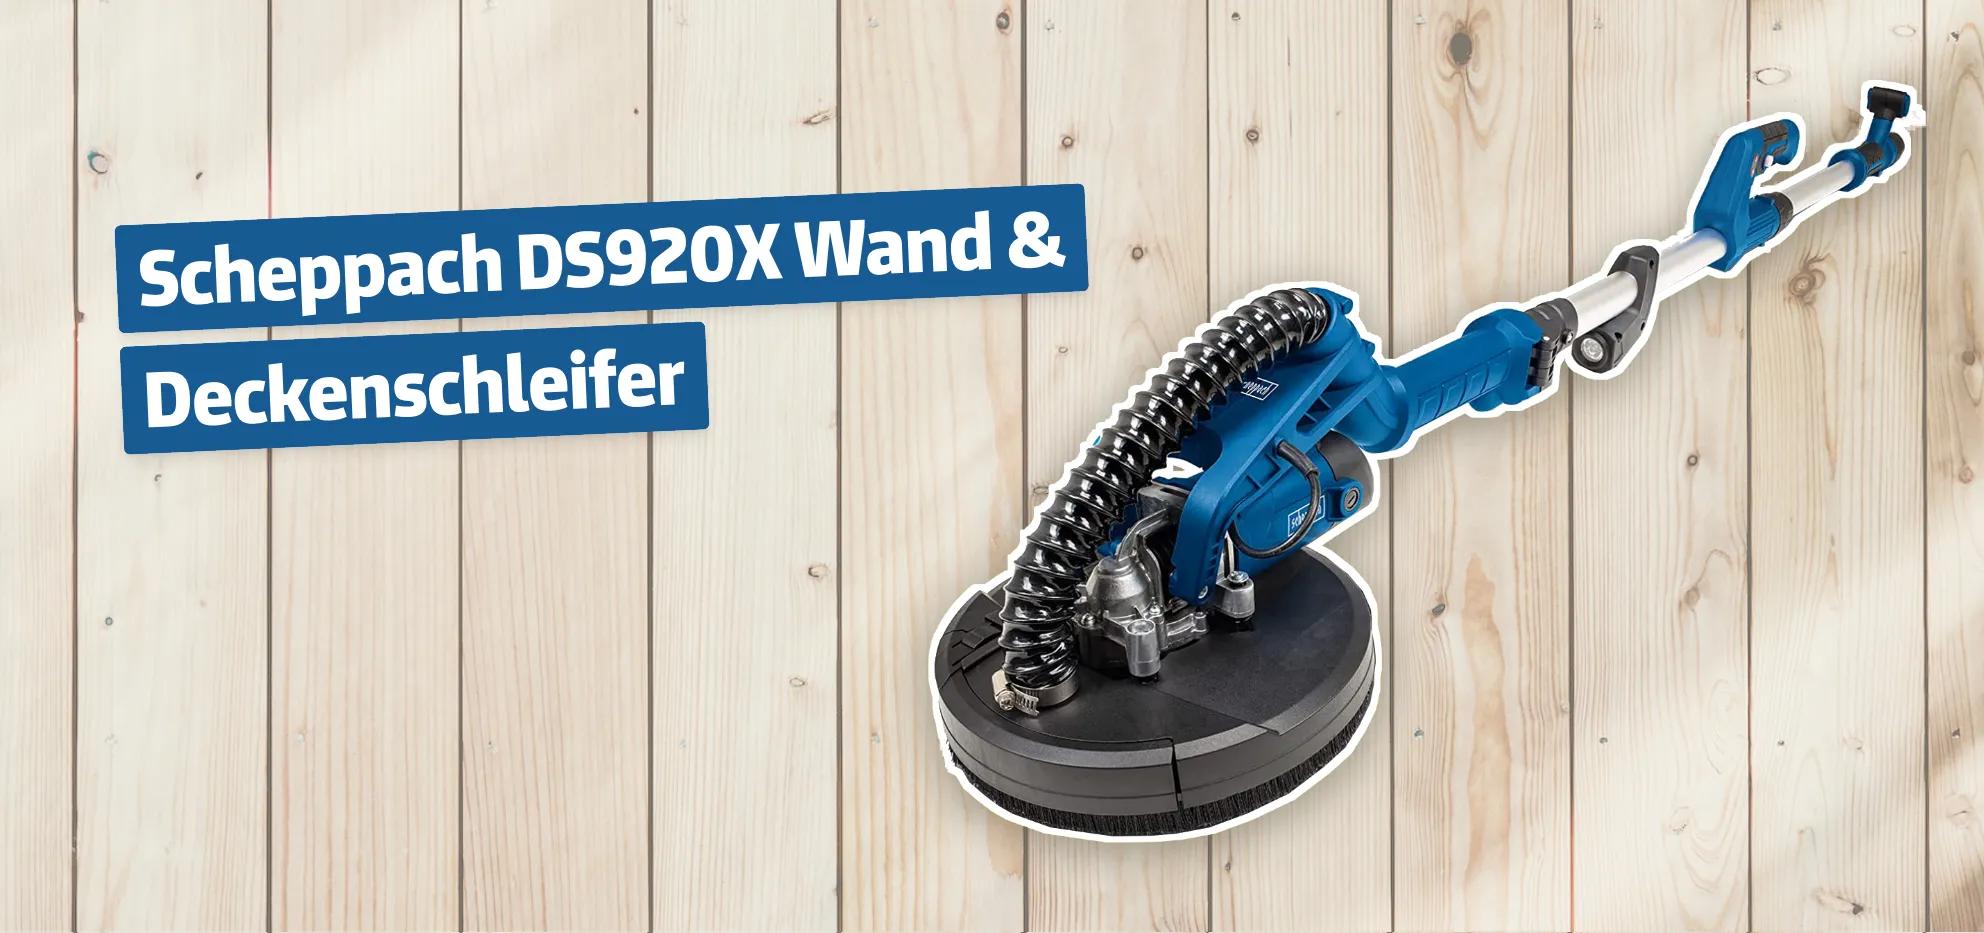 Scheppach DS920X Wand & Deckenschleifer